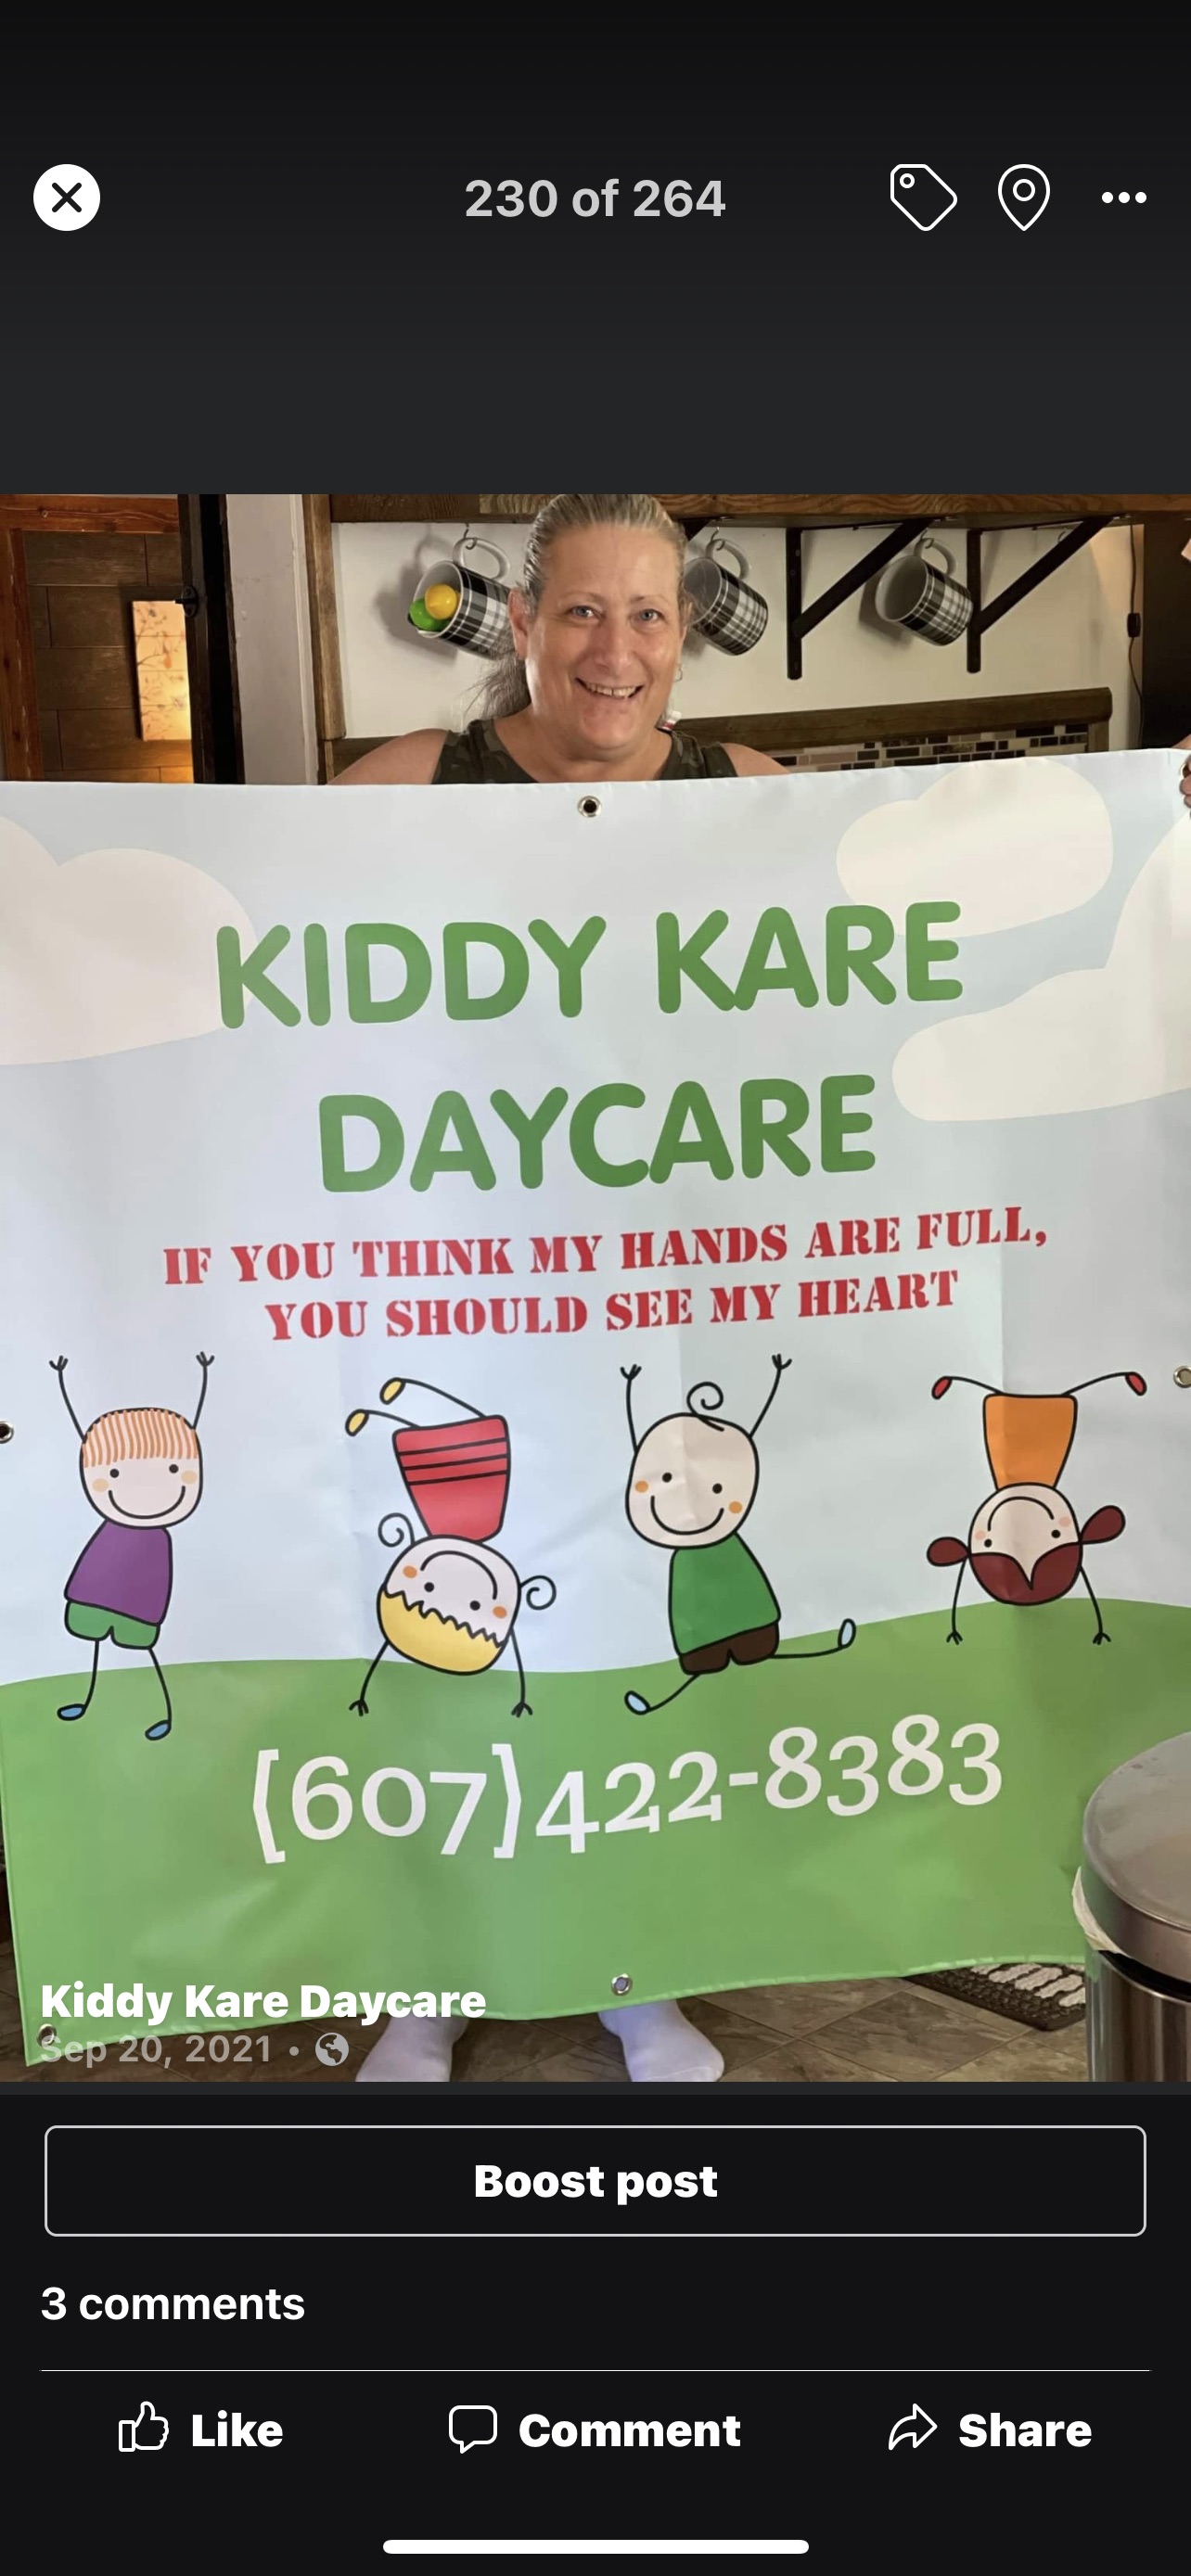 Kiddy Kare Daycare